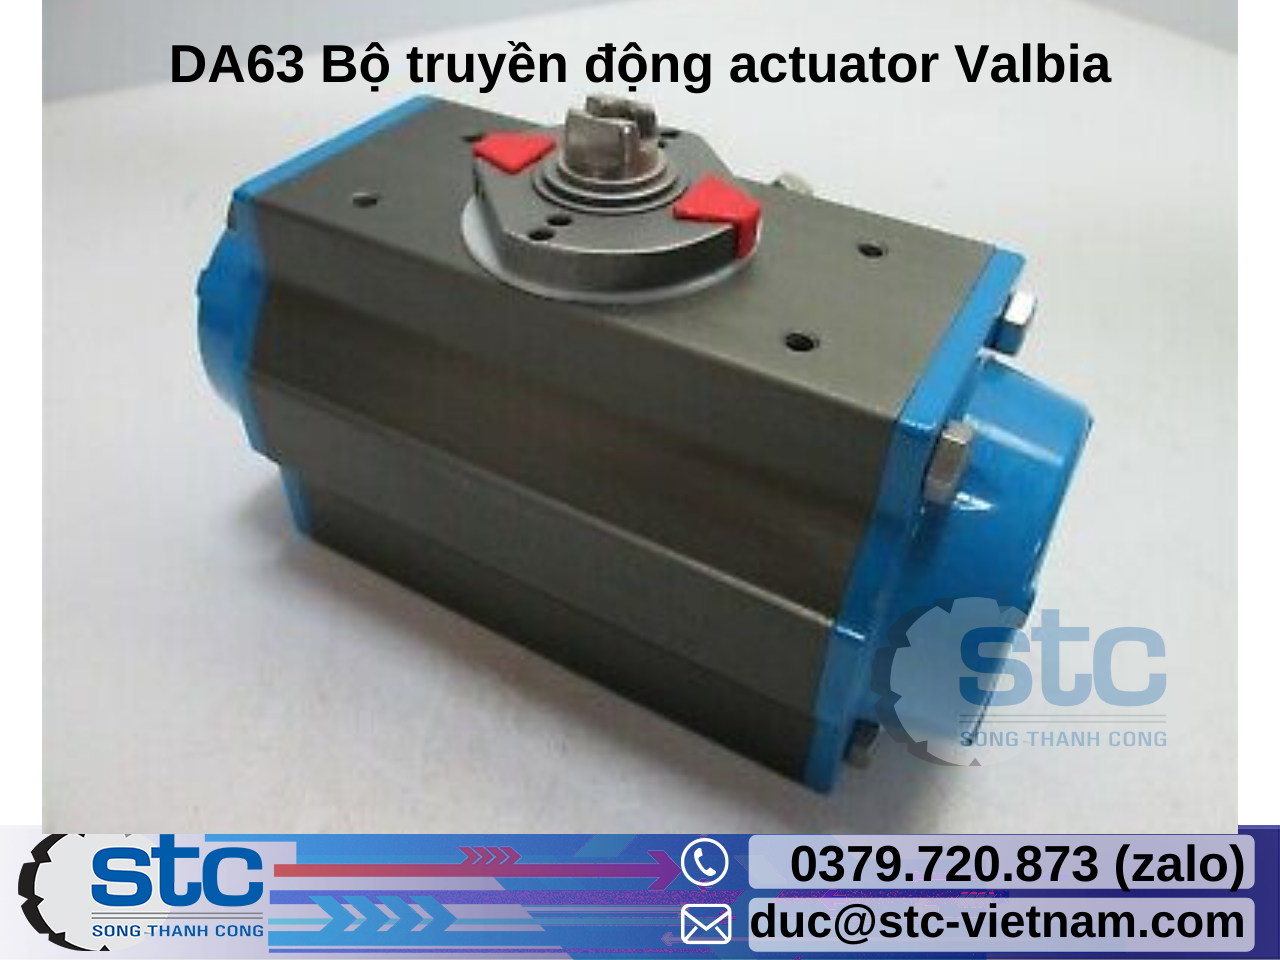 da63-bo-truyen-dong-actuator-valbia.png